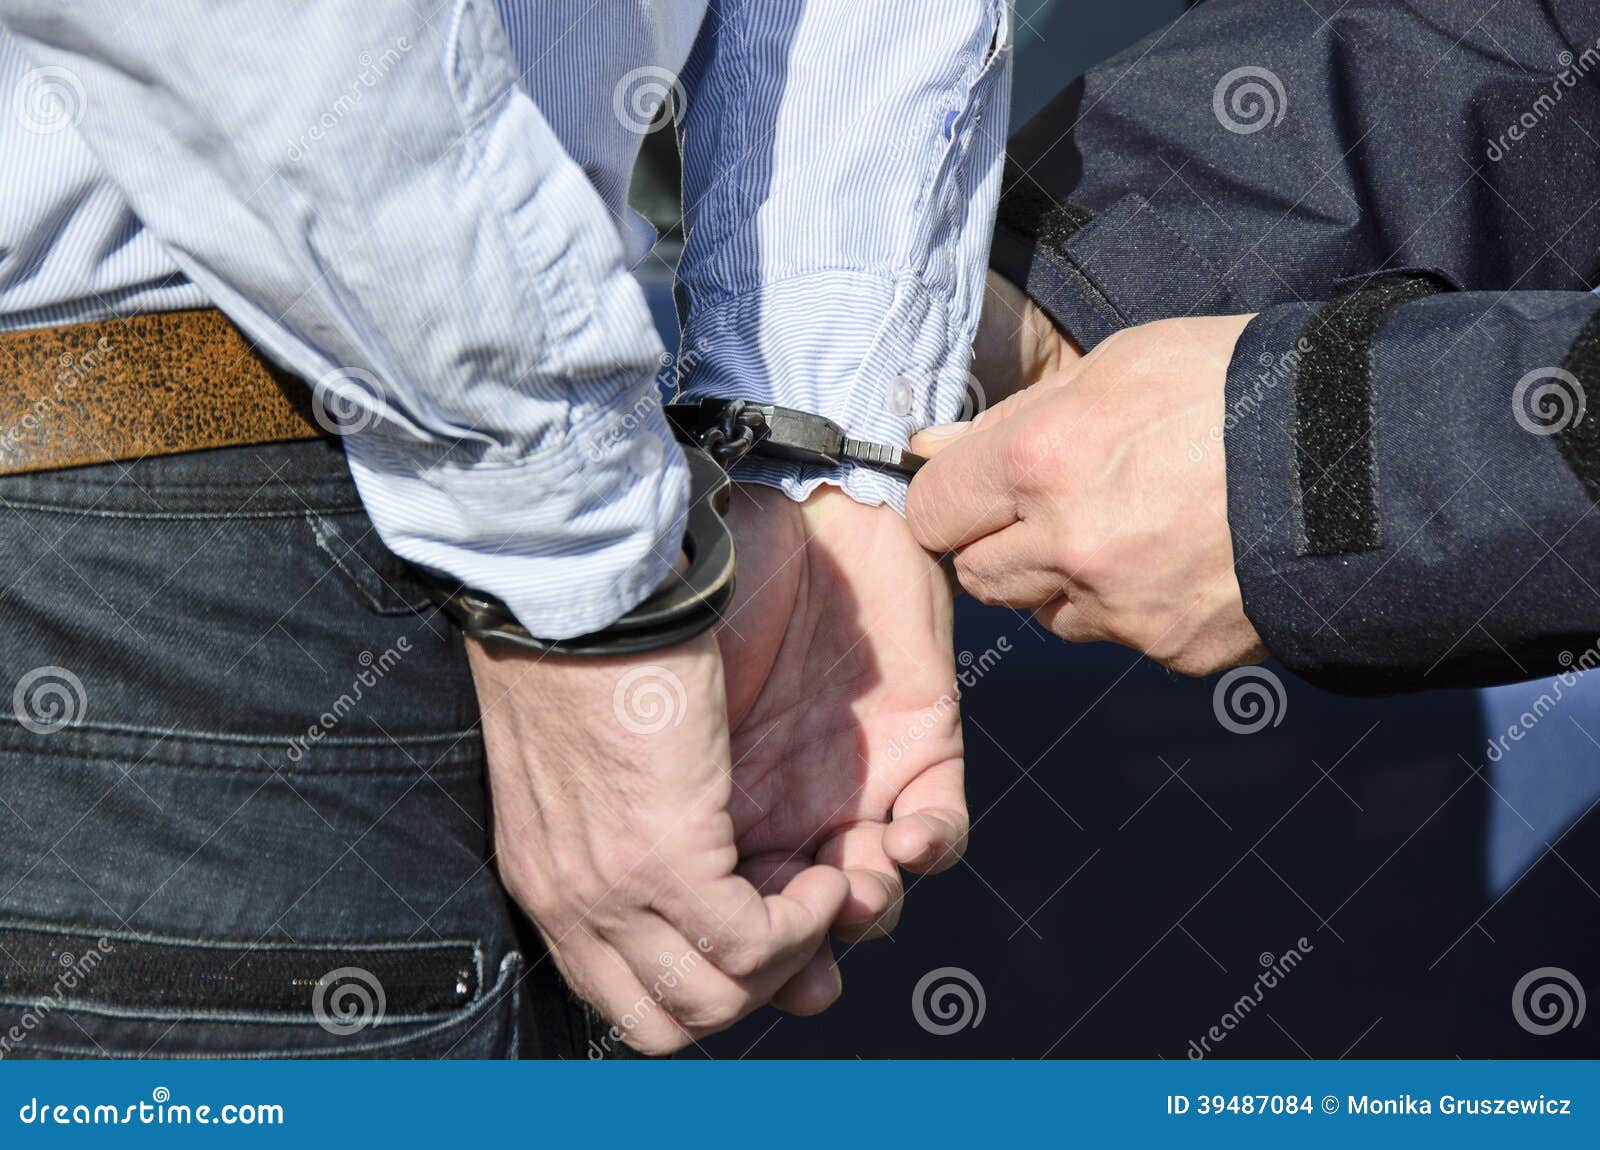 Η σύλληψη ενός ατόμου. Η φωτογραφία παρουσιάζει τη σύλληψη ενός ατόμου.